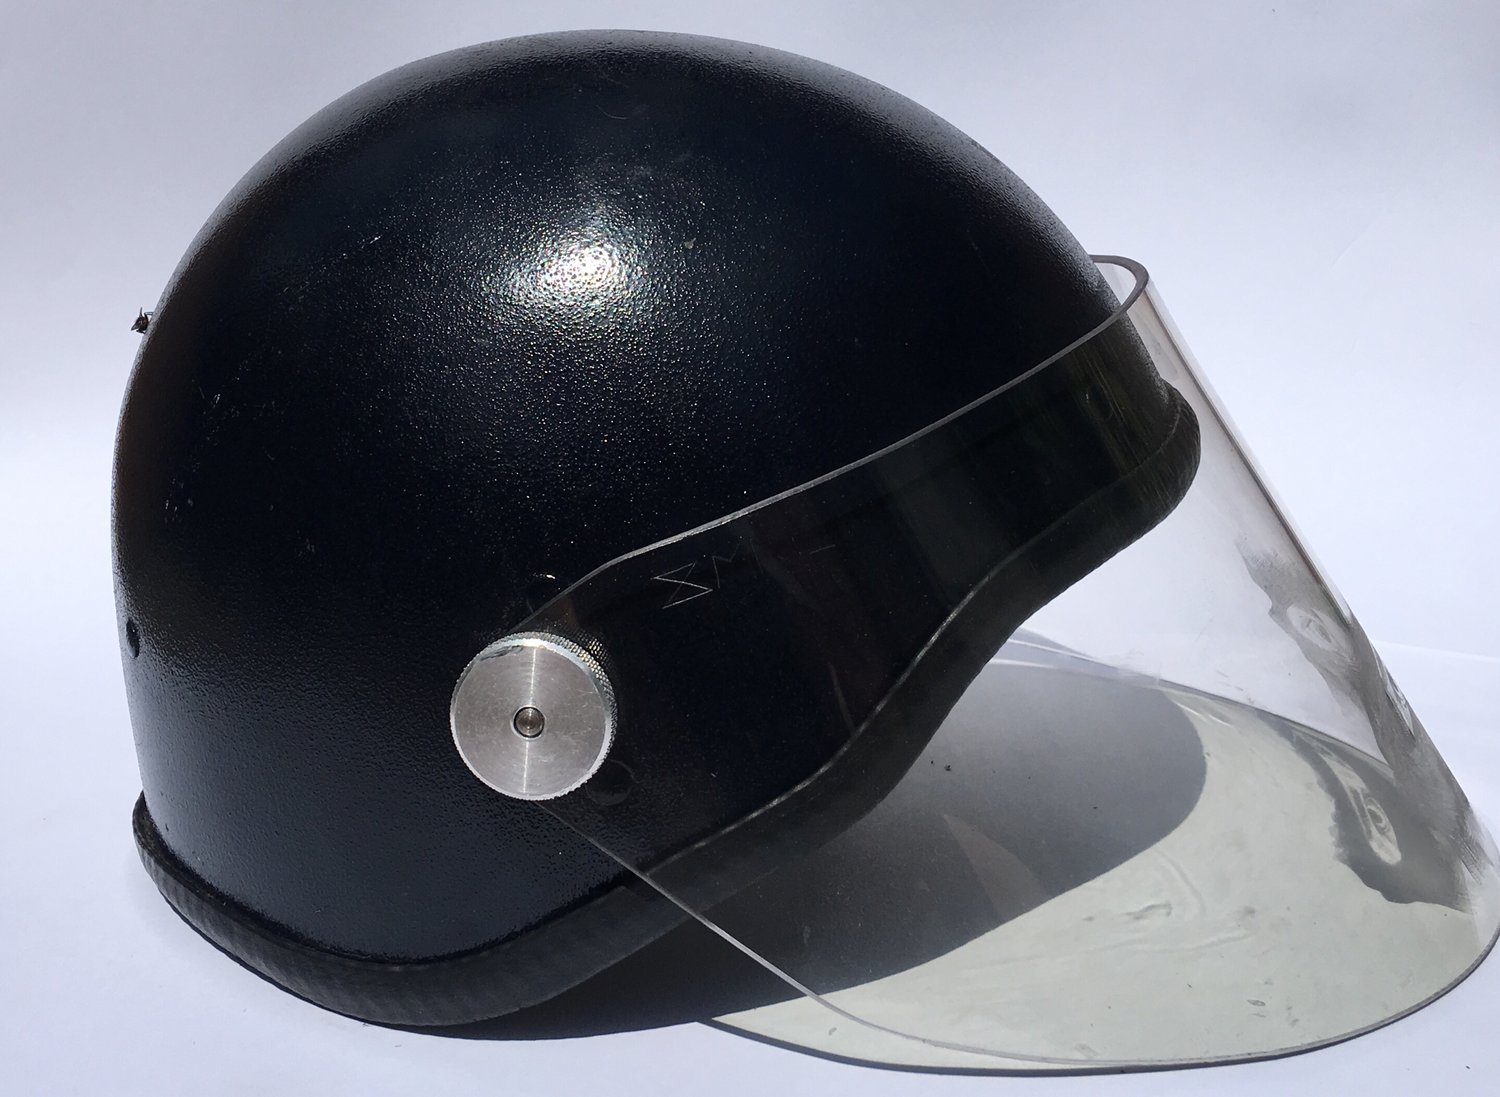 Image of ‘Gaze’ -Carved Projector from Vintage Riot helmet-